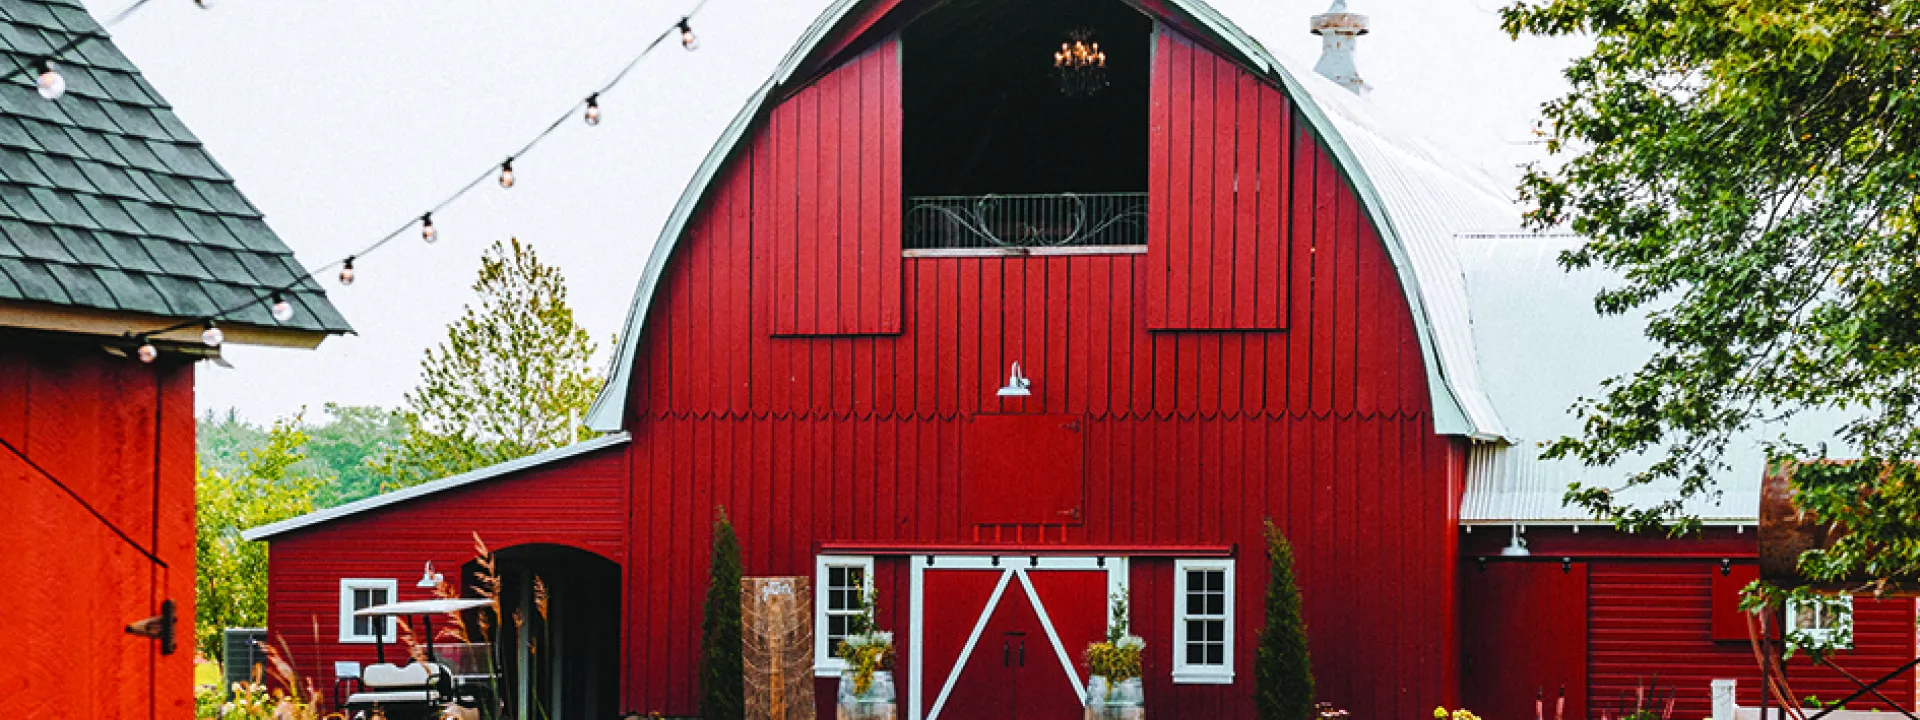 Redeemed Farm, a barn wedding venue in Minnesota.